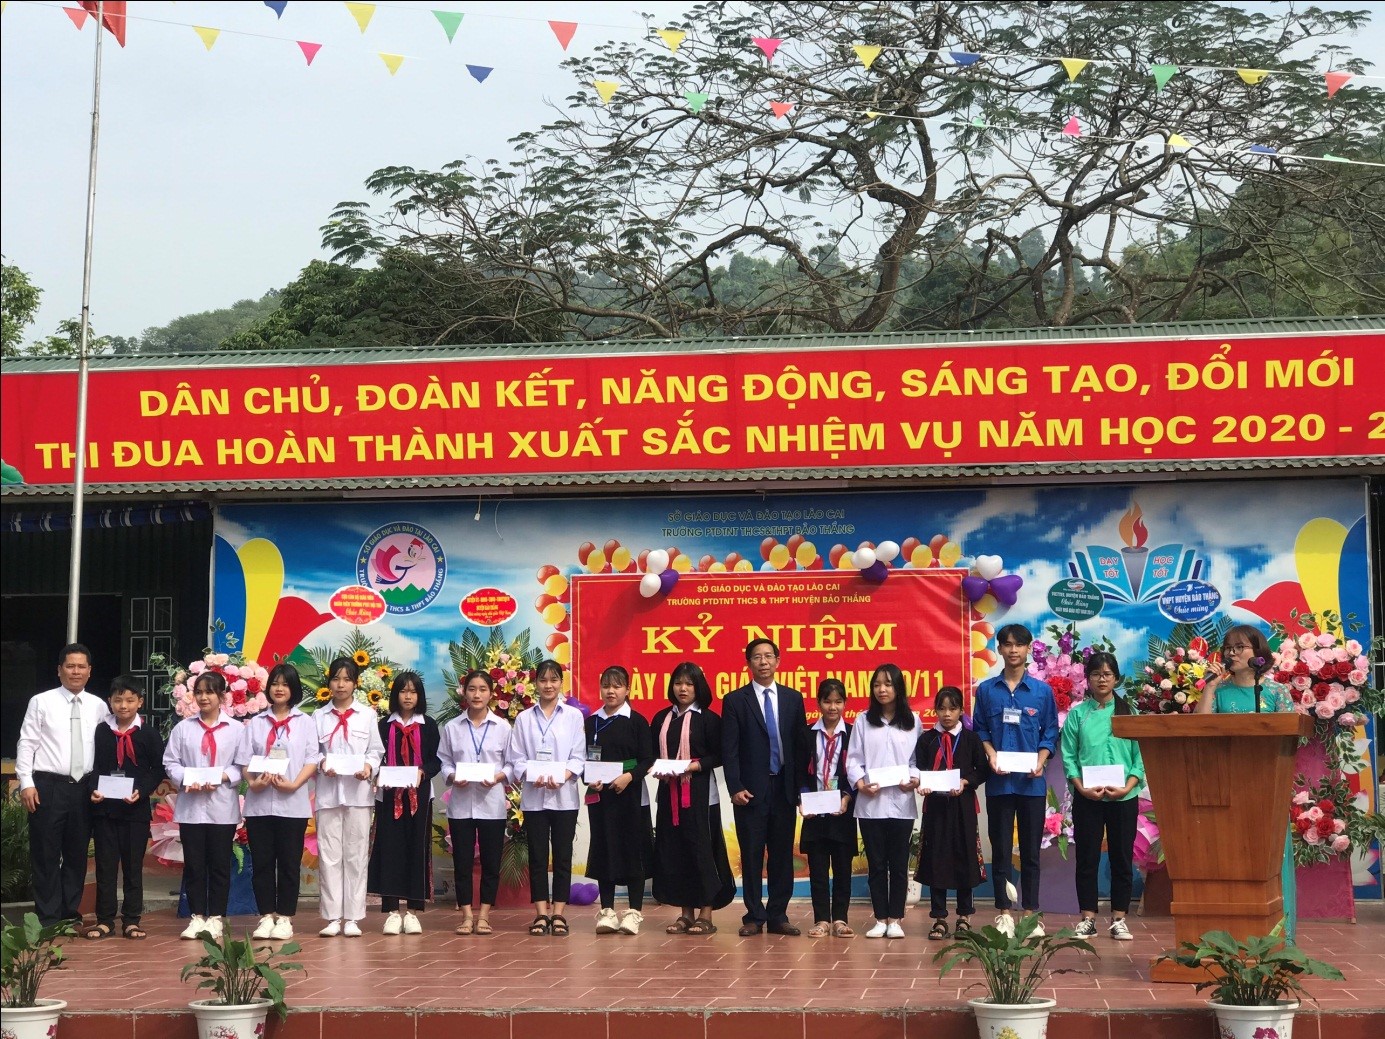 Hoạt động kỷ niệm ngày Nhà giáo Việt Nam năm 2020